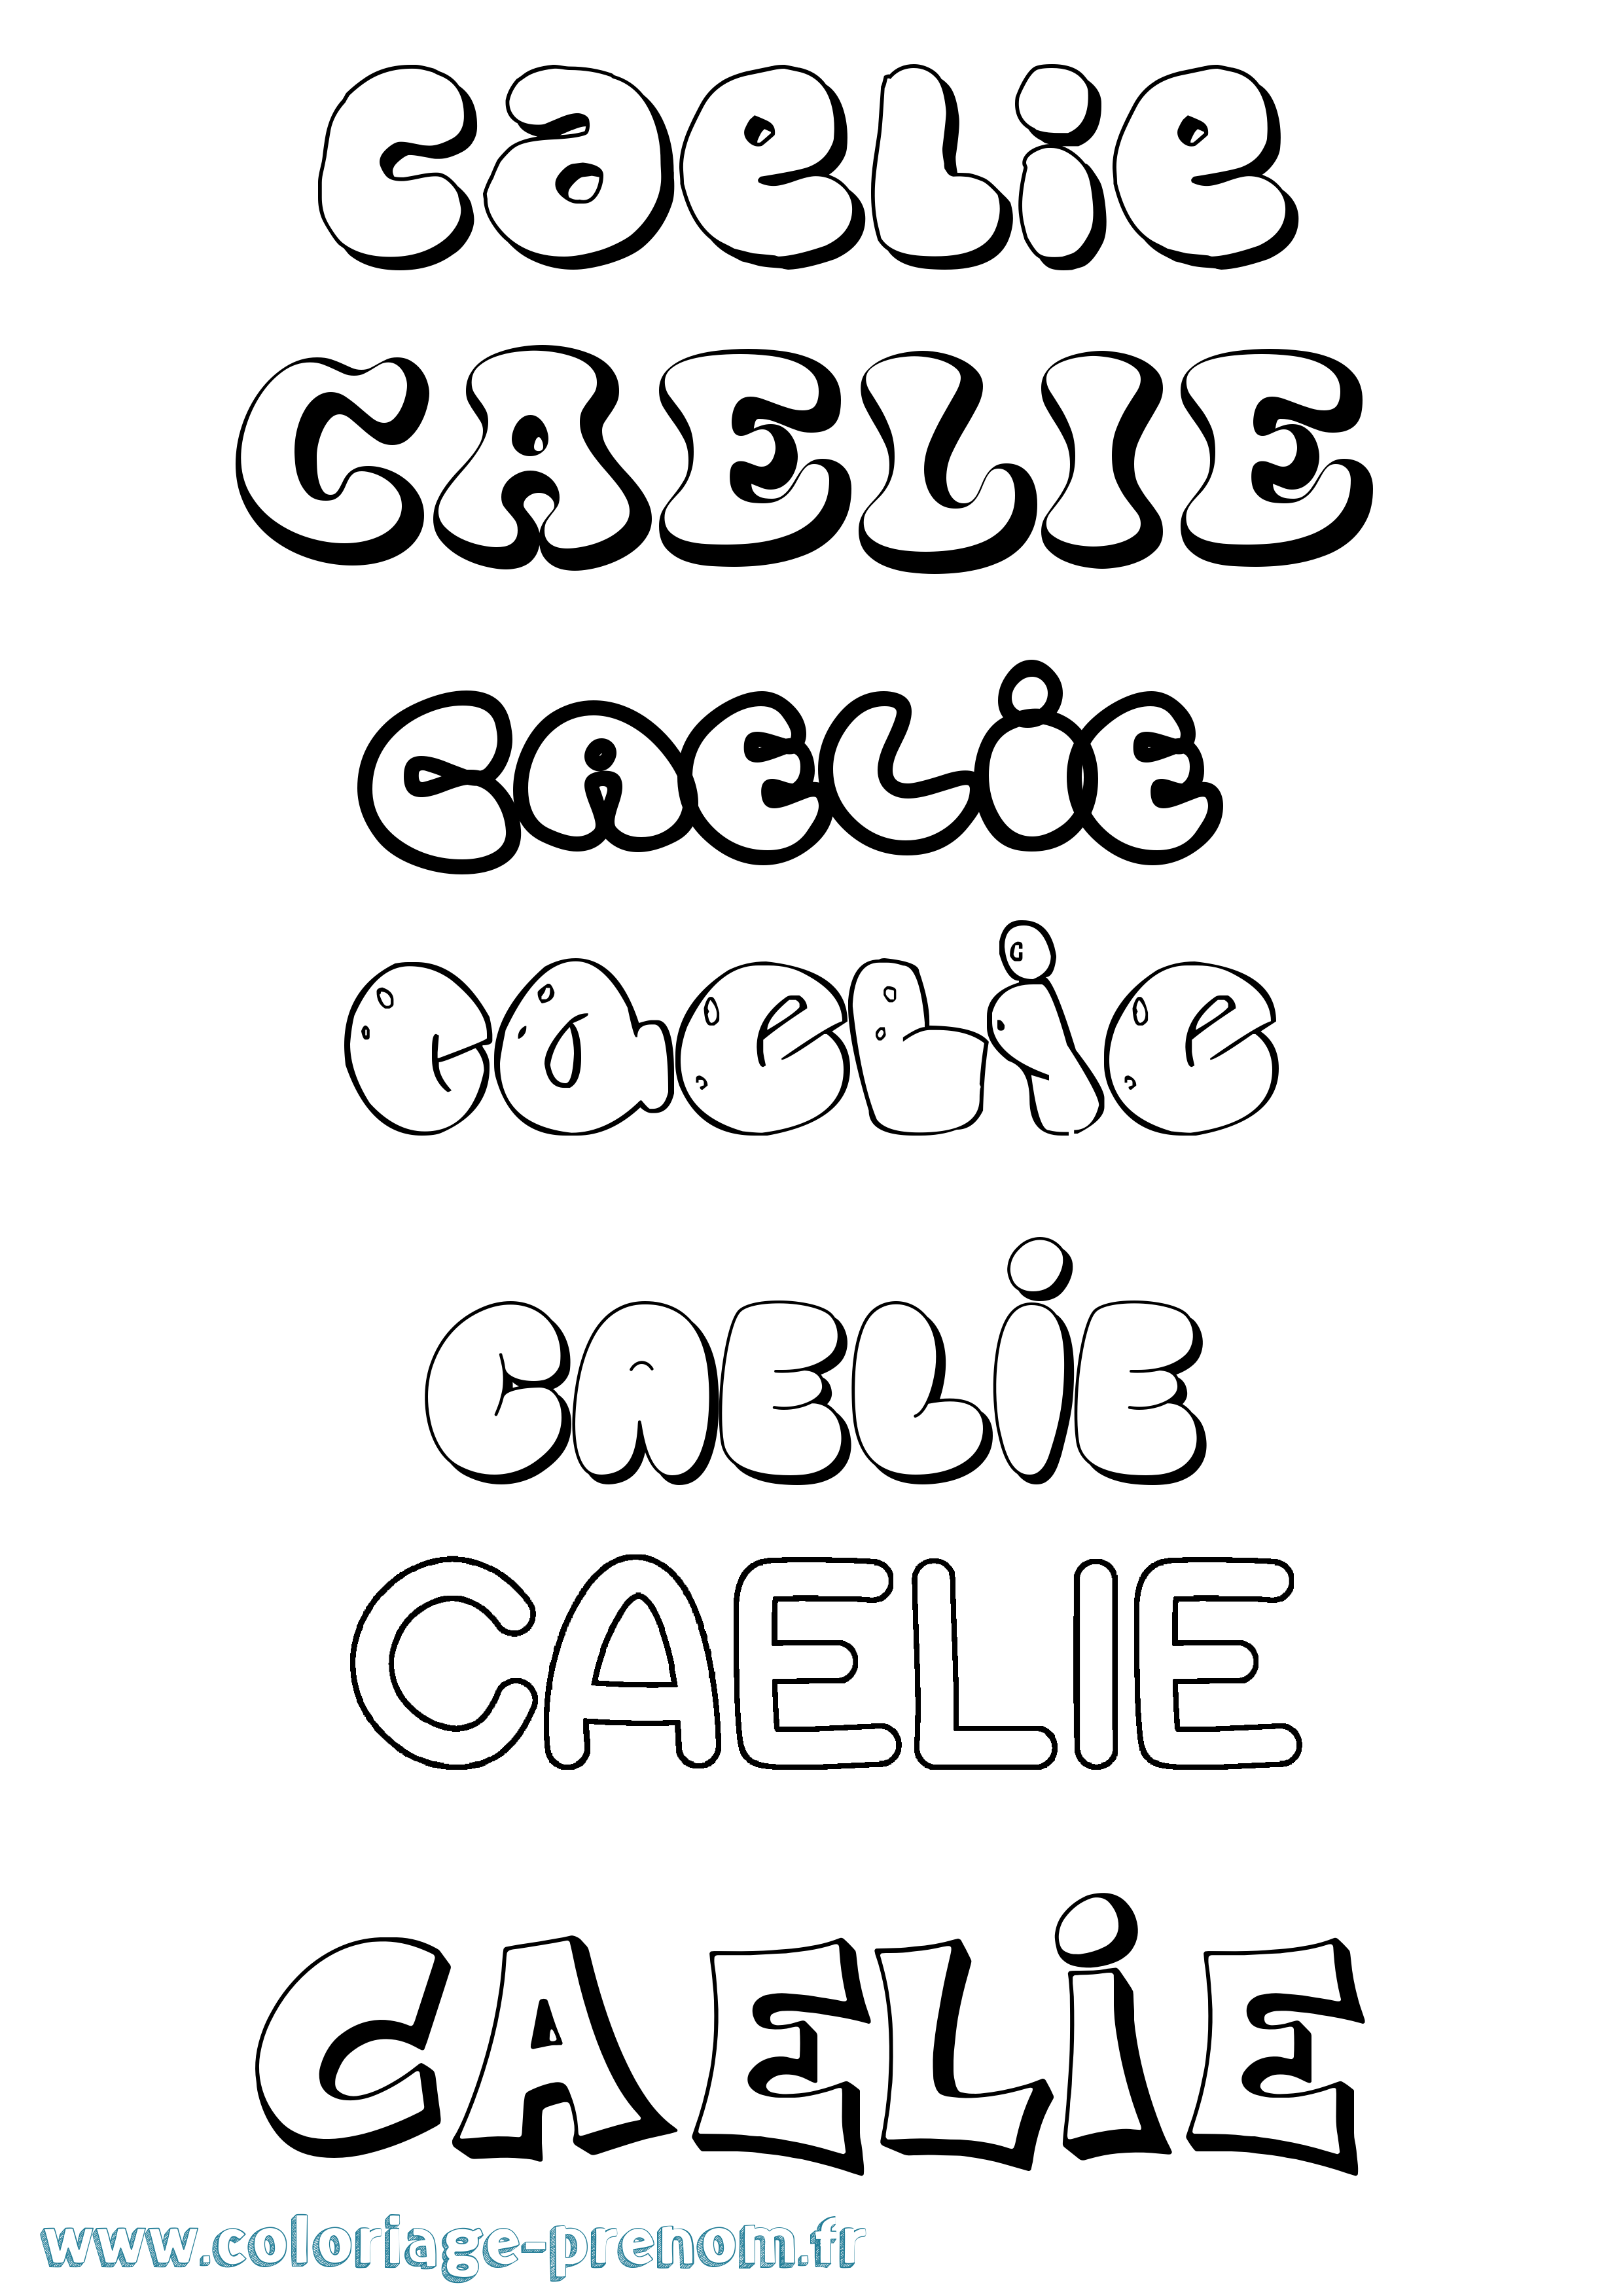 Coloriage prénom Caelie Bubble